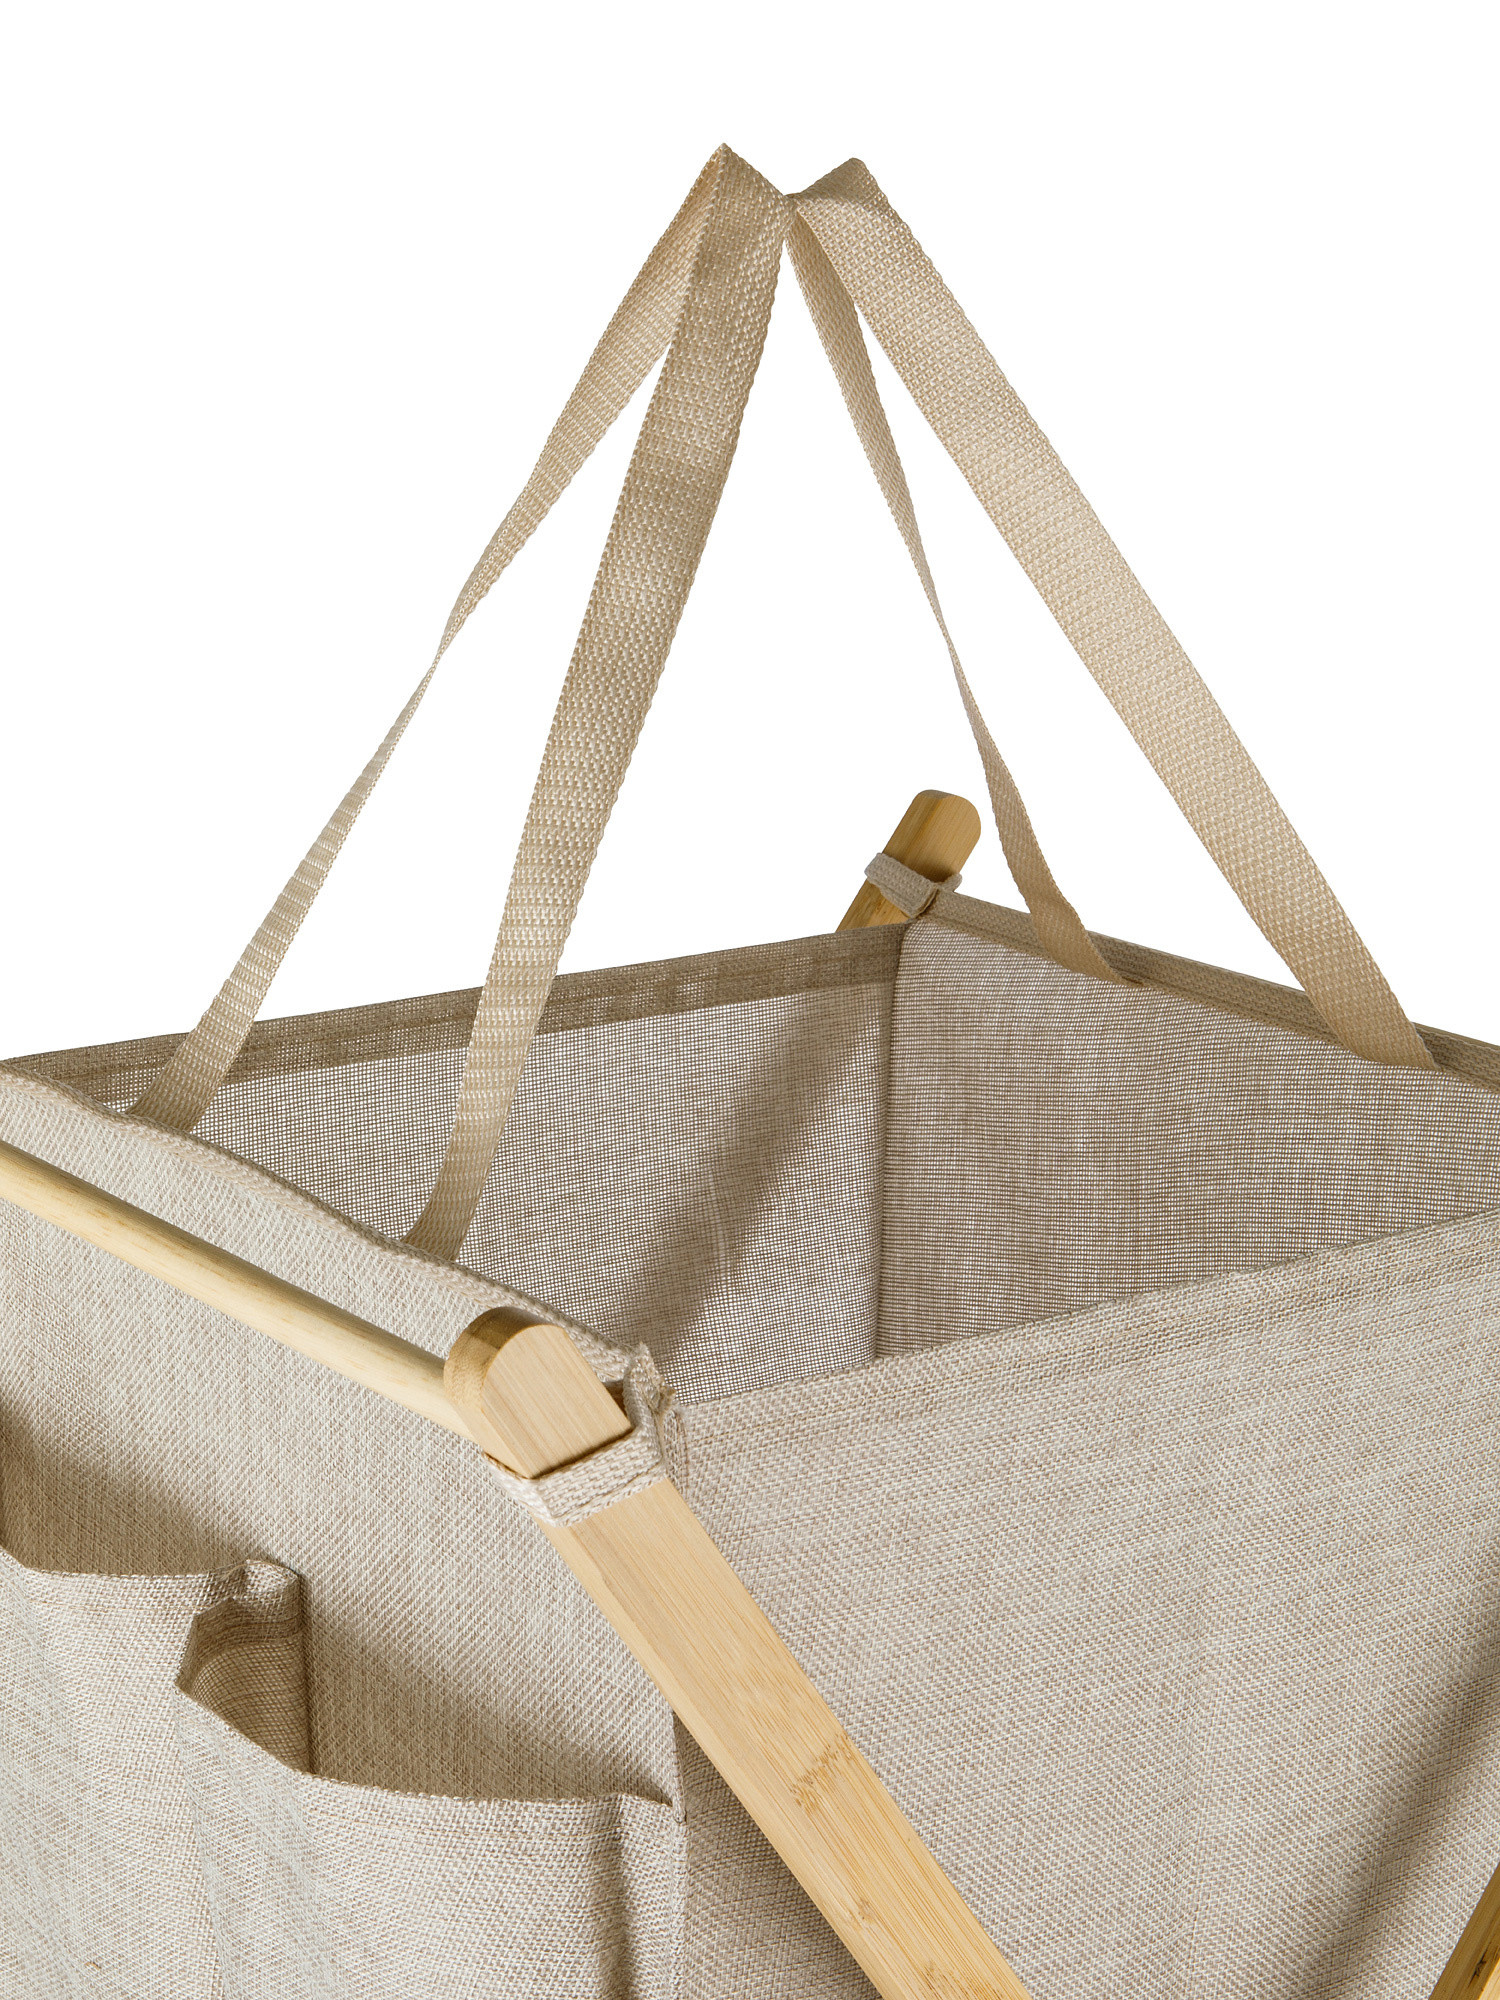 Foldable fabric laundry basket, Light Beige, large image number 1